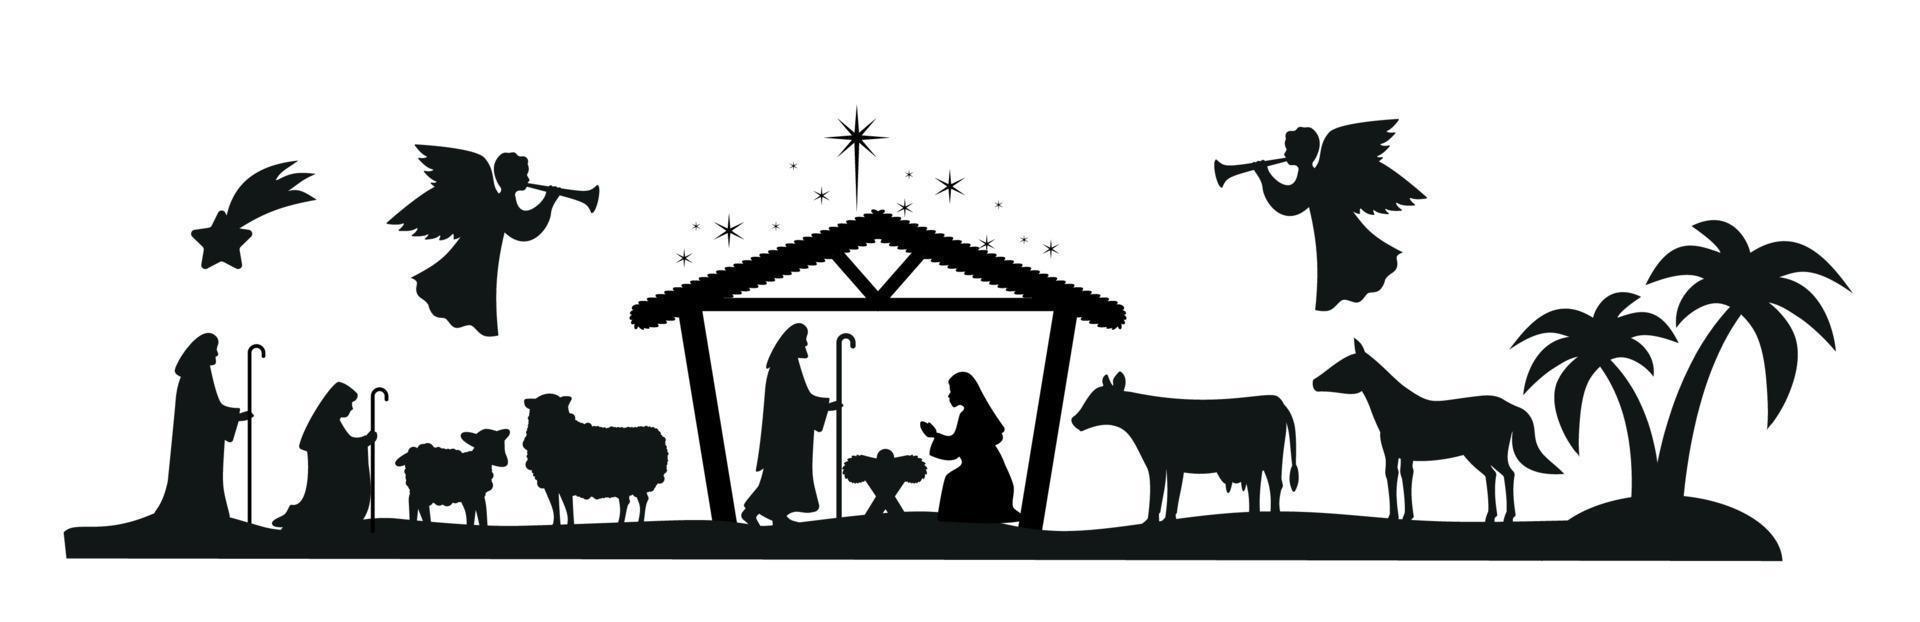 pesebre navideño con el niño jesús, maría y josé en el pesebre.tradicional historia cristiana de navidad. ilustración vectorial para niños. eps 10 vector